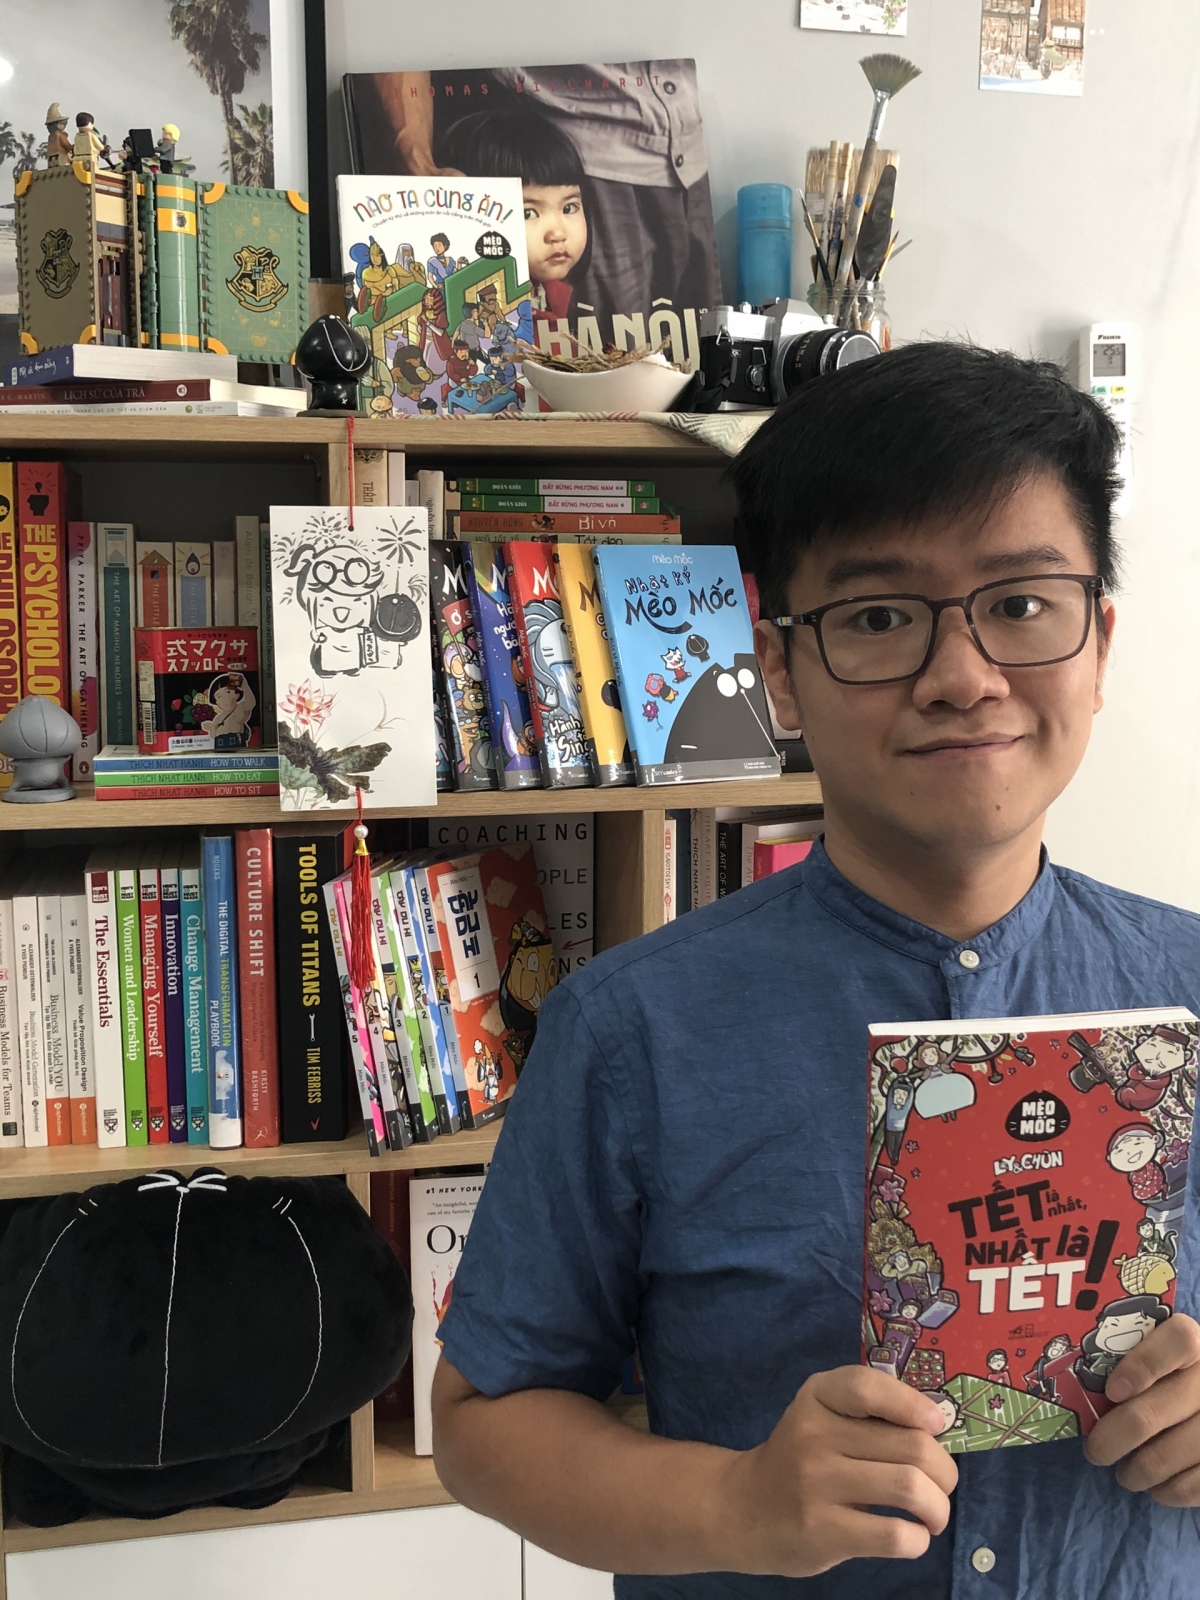 Chàng trai 9X Mèo Mốc (Đặng Quang Dũng) với cuốn truyện tranh "Tết là nhất, nhất là Tết!".